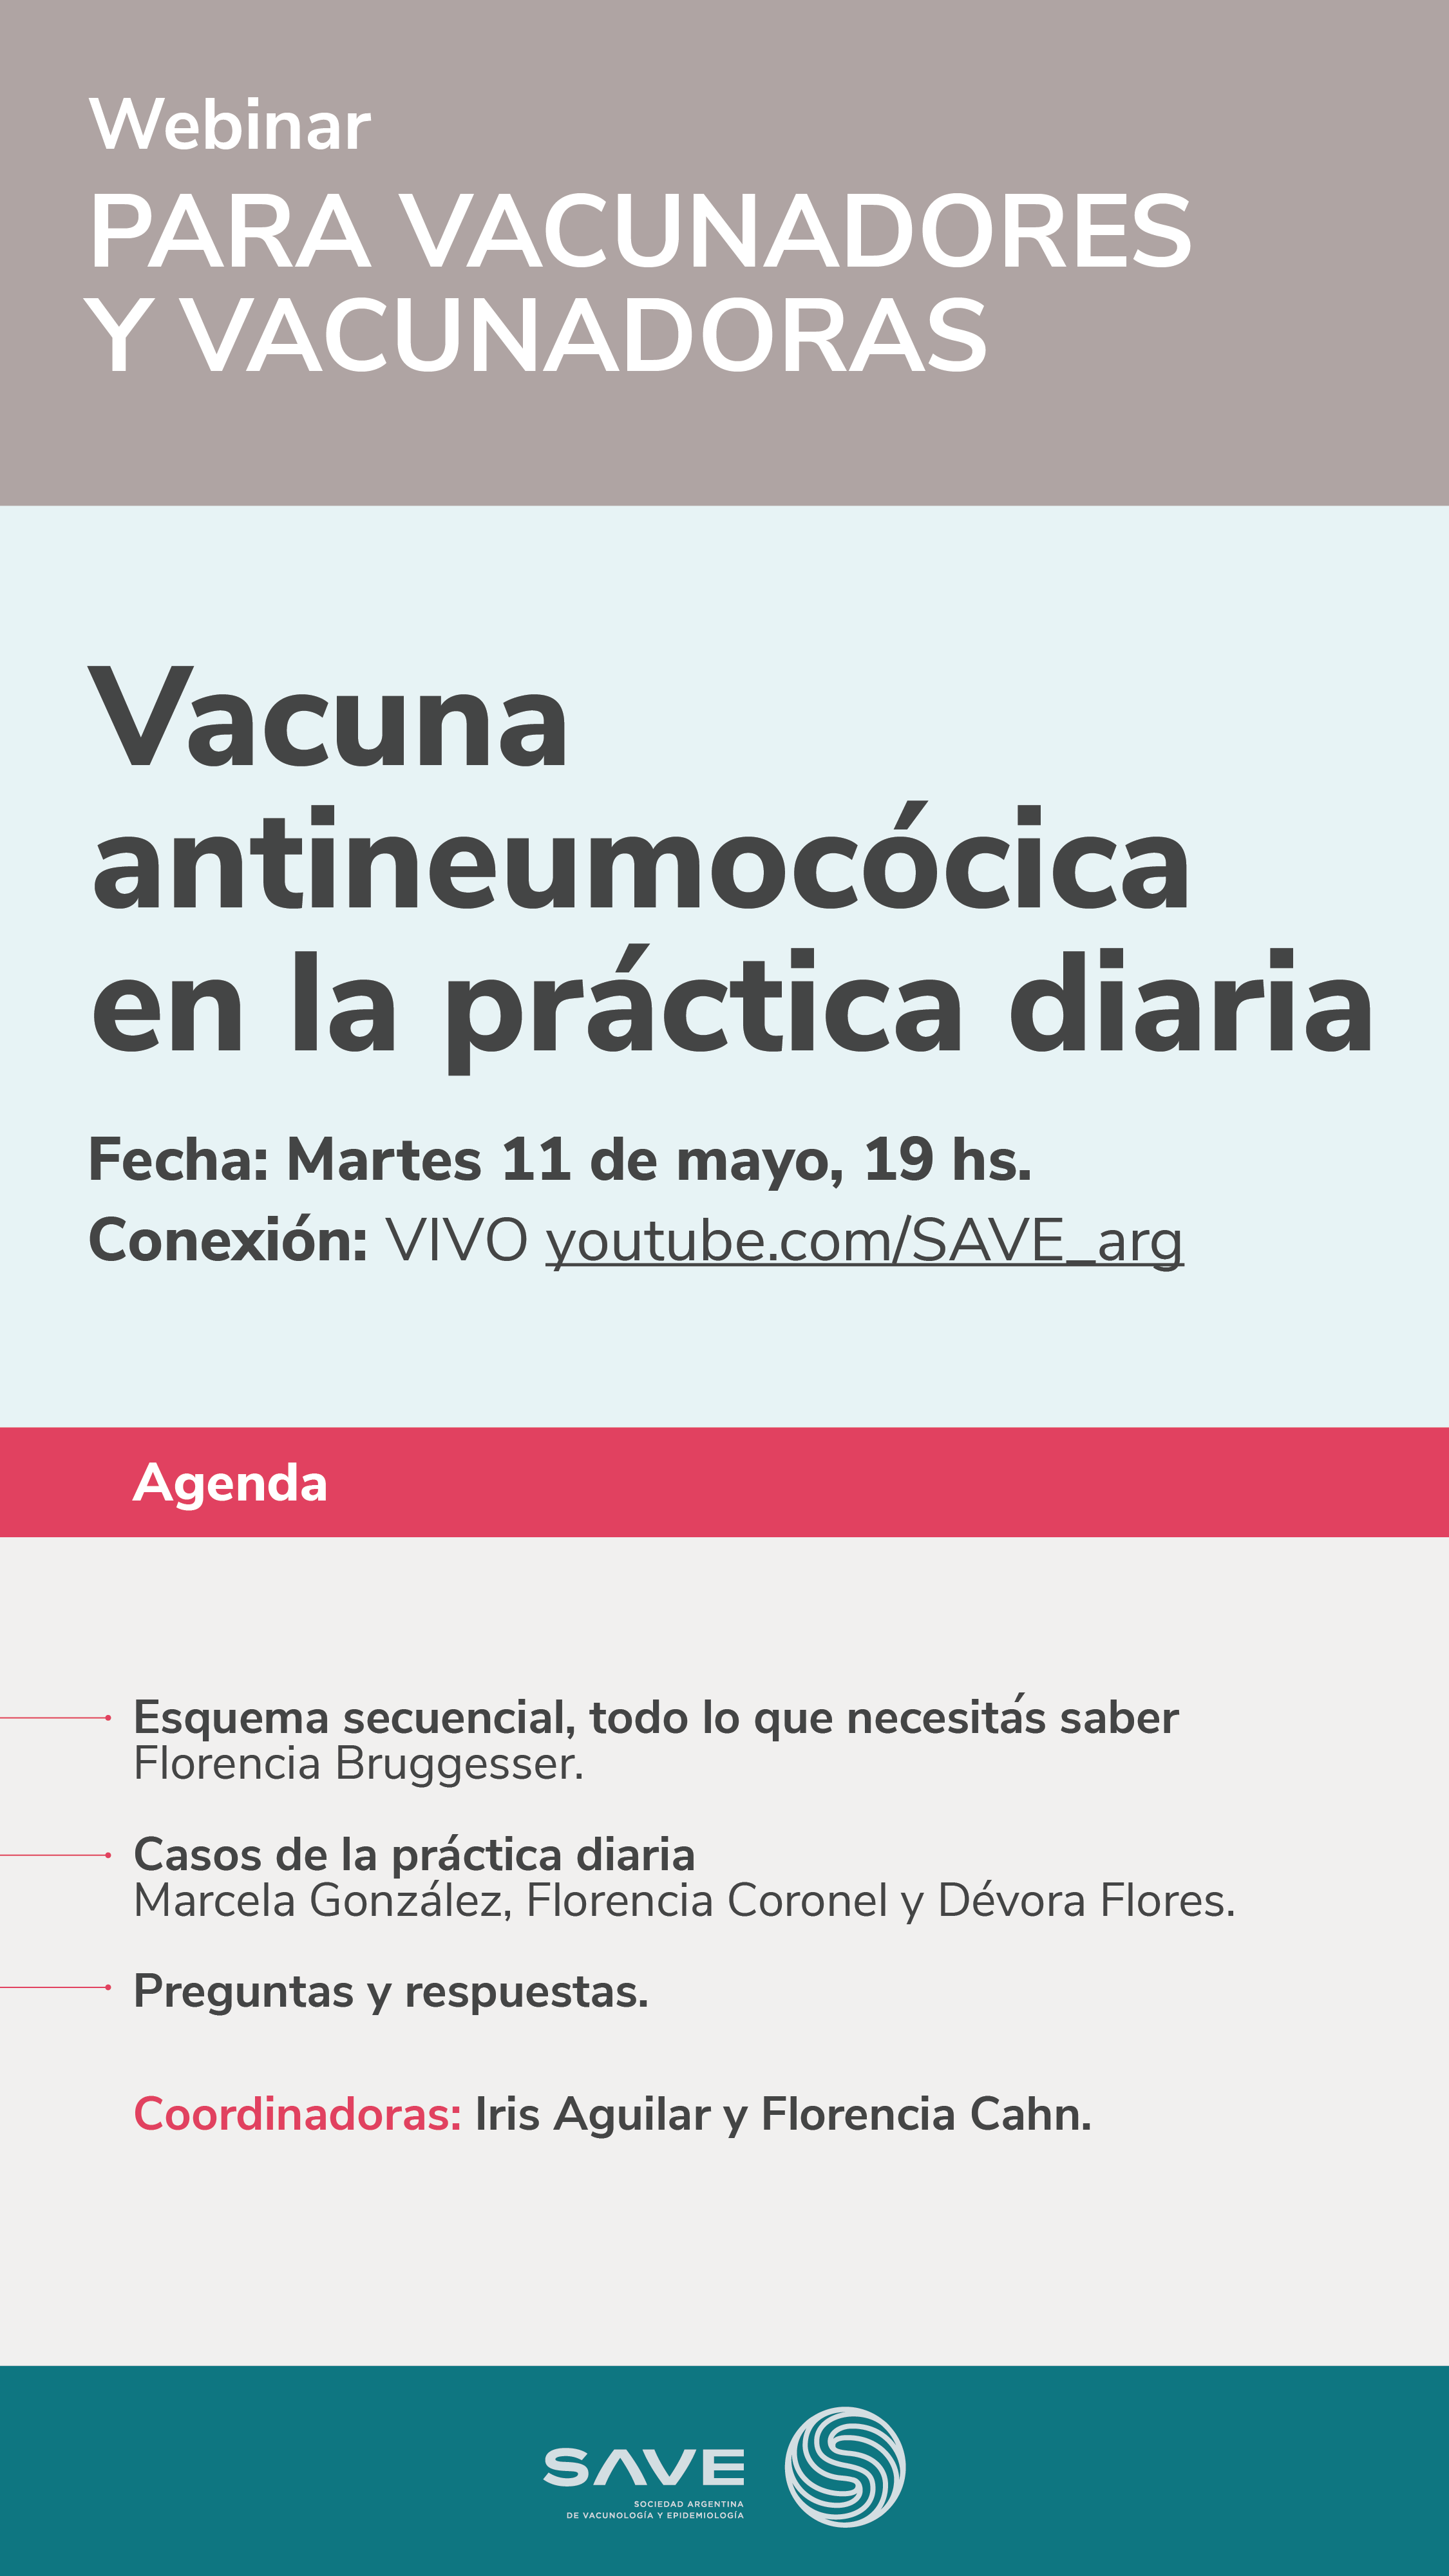 Nuevo Webinar: Vacuna antineumocócica en la práctica diaria